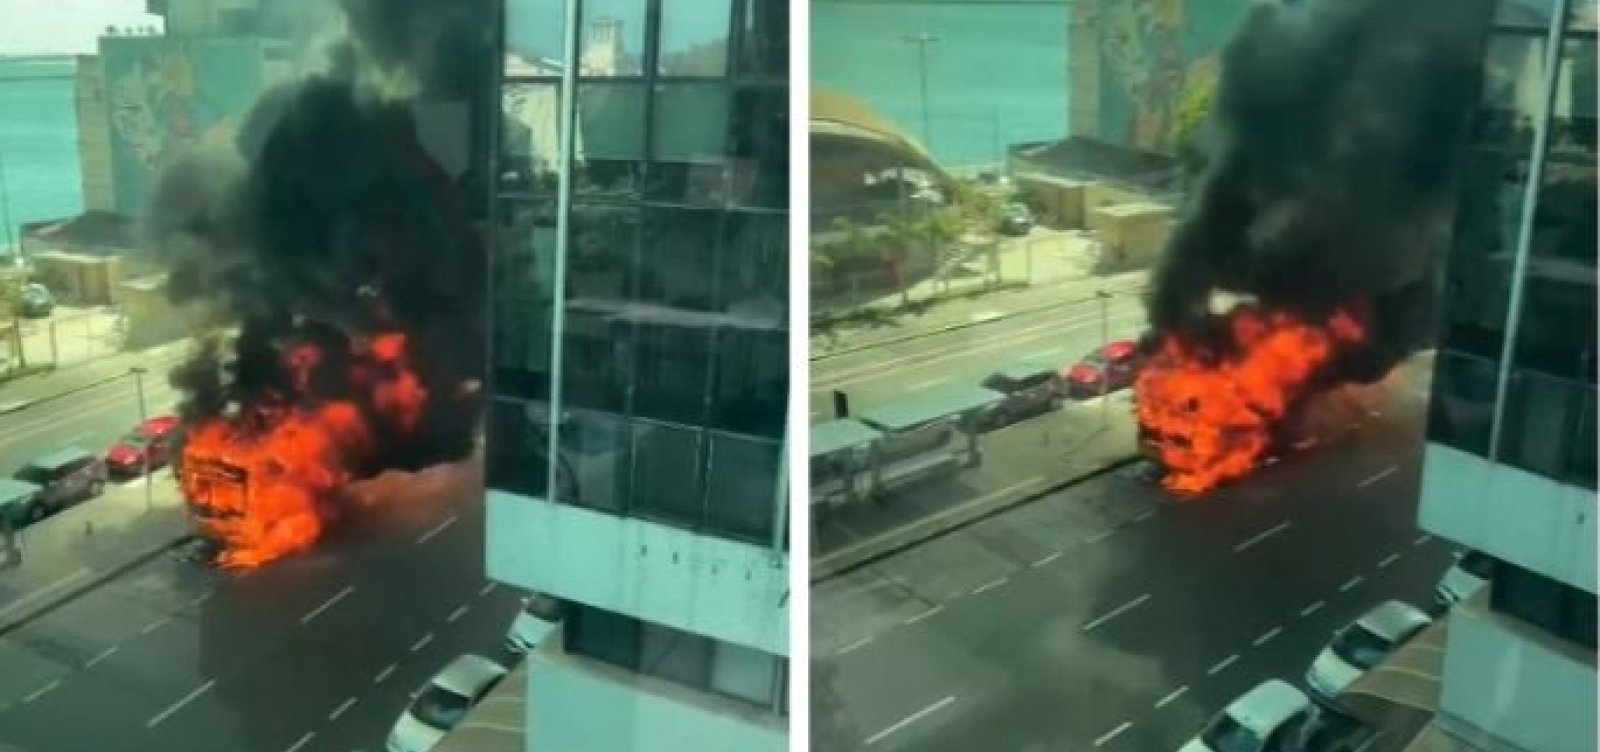 Após problemas mecânicos, ônibus pega fogo no bairro do Comércio